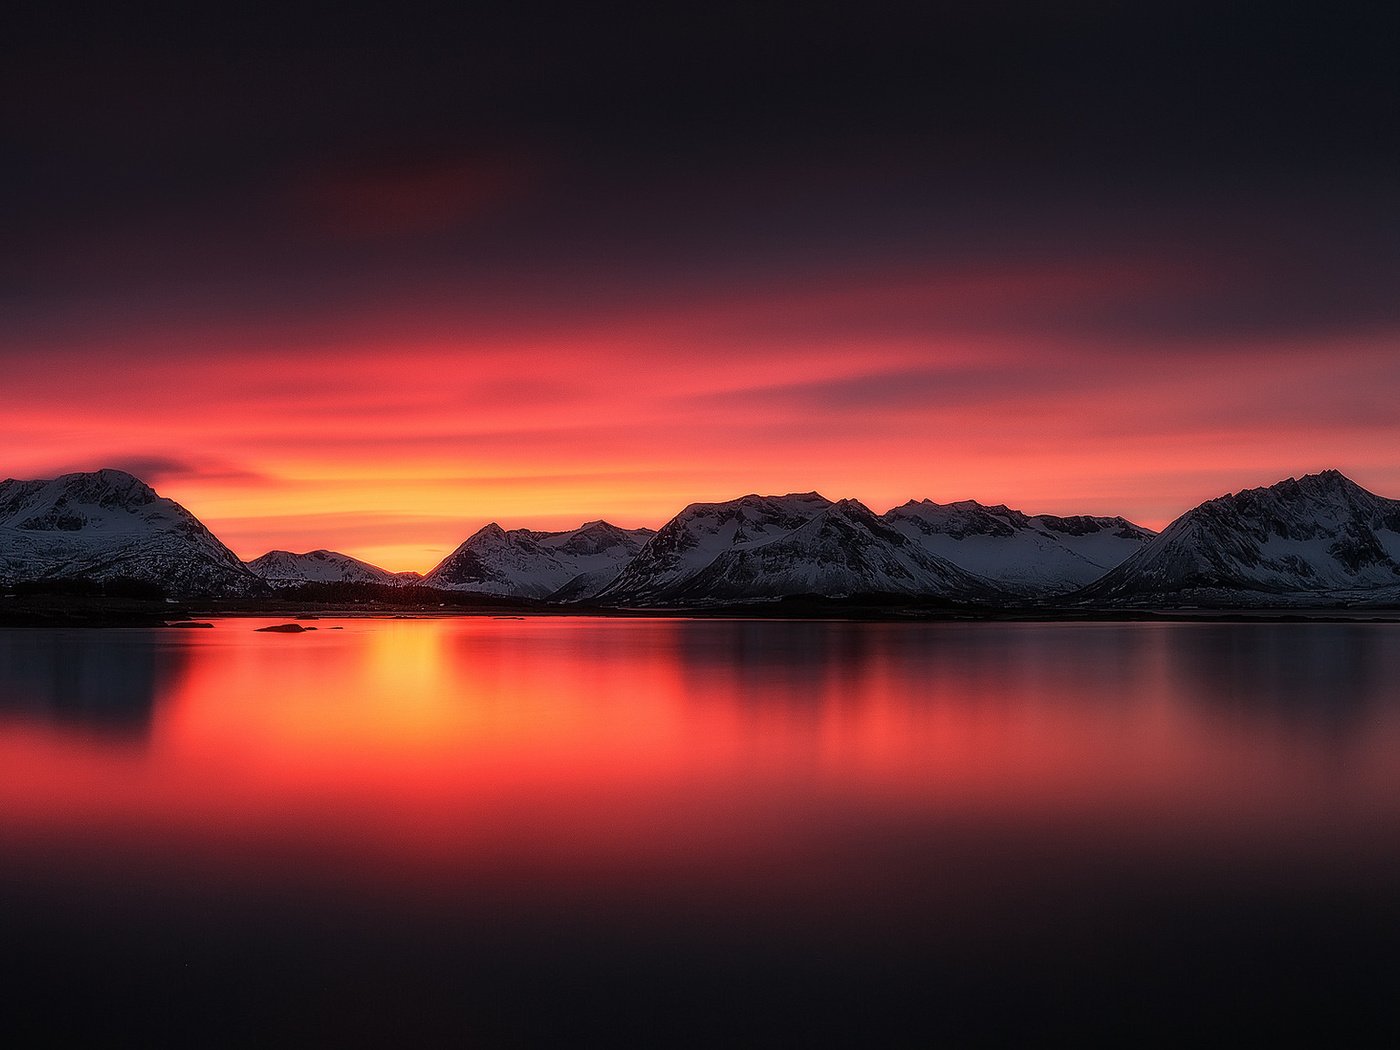 Фотография размером 1024 2048. Красивый пейзаж на фоне гор. Горы и небо красное. Пейзаж закат горы красный. Горы озеро закат.